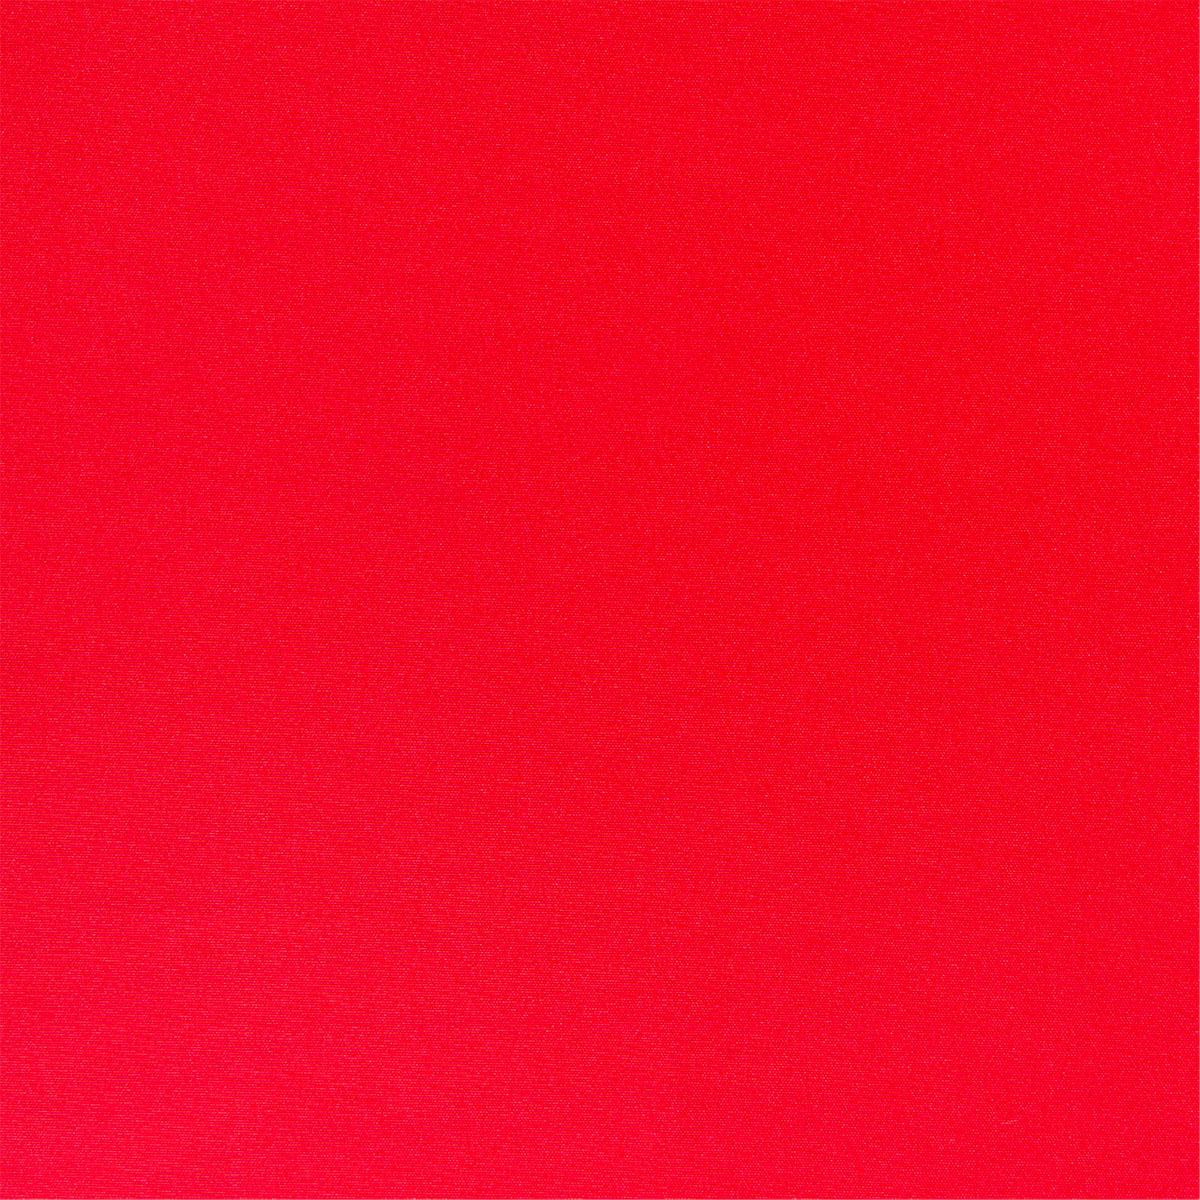 Outdoor-Stoff rot in 1,6m Breite (METERWARE) Markisenstoff aus 100% Polyester